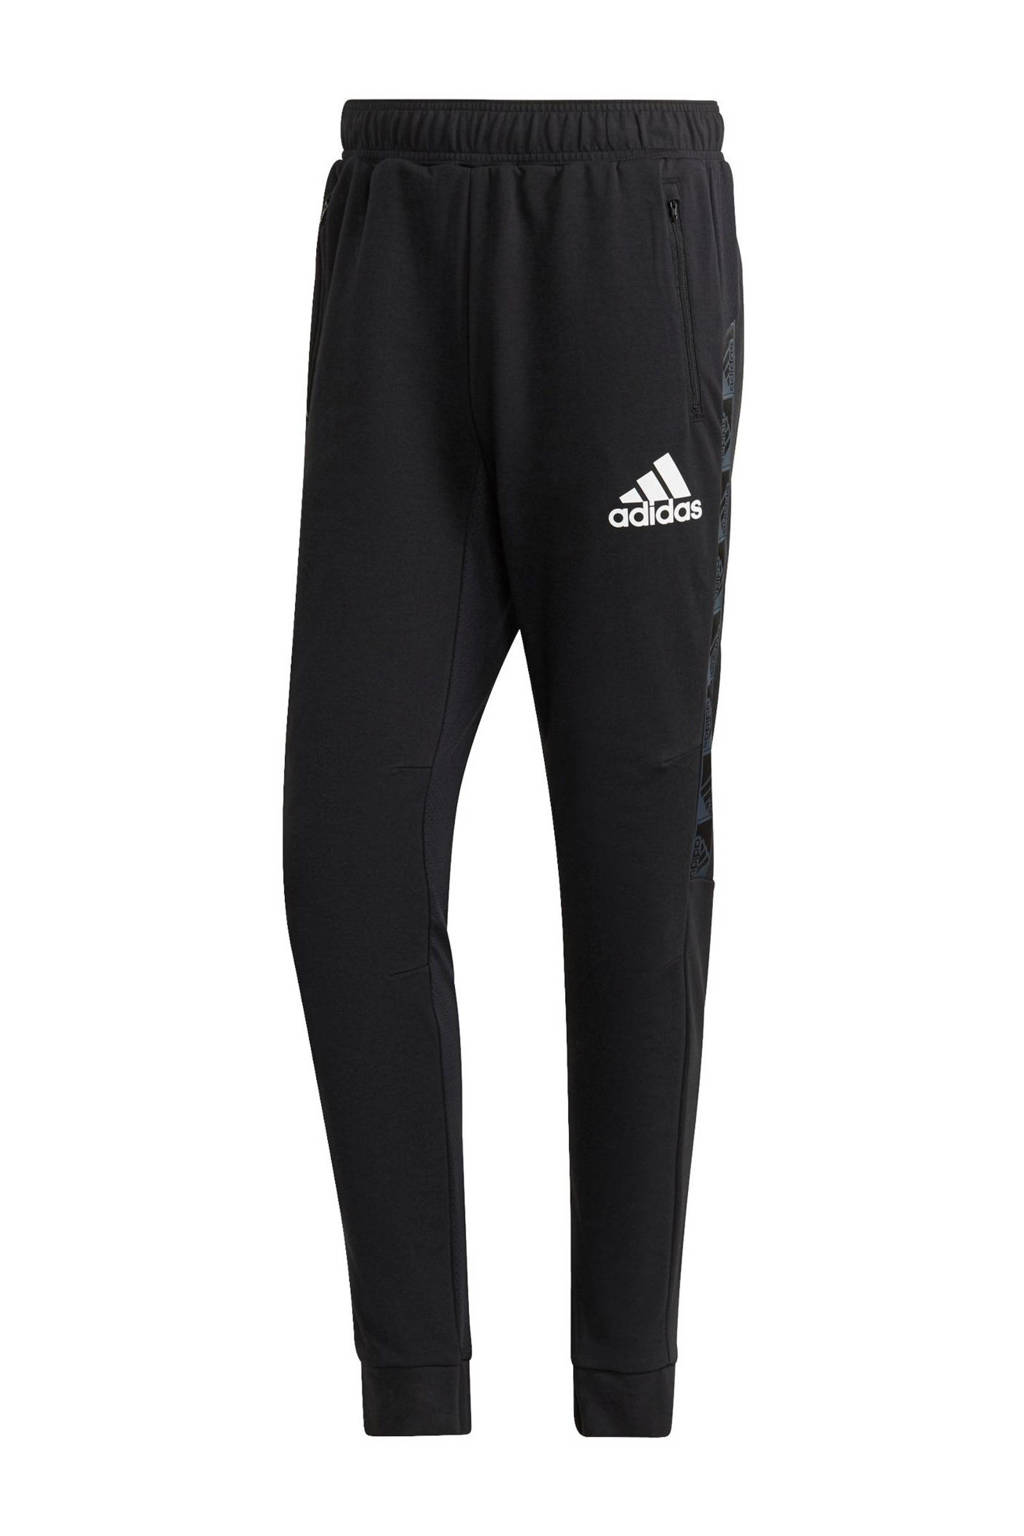 Zwart en witte heren adidas Performance joggingbroek van katoen met regular fit, regular waist en logo dessin